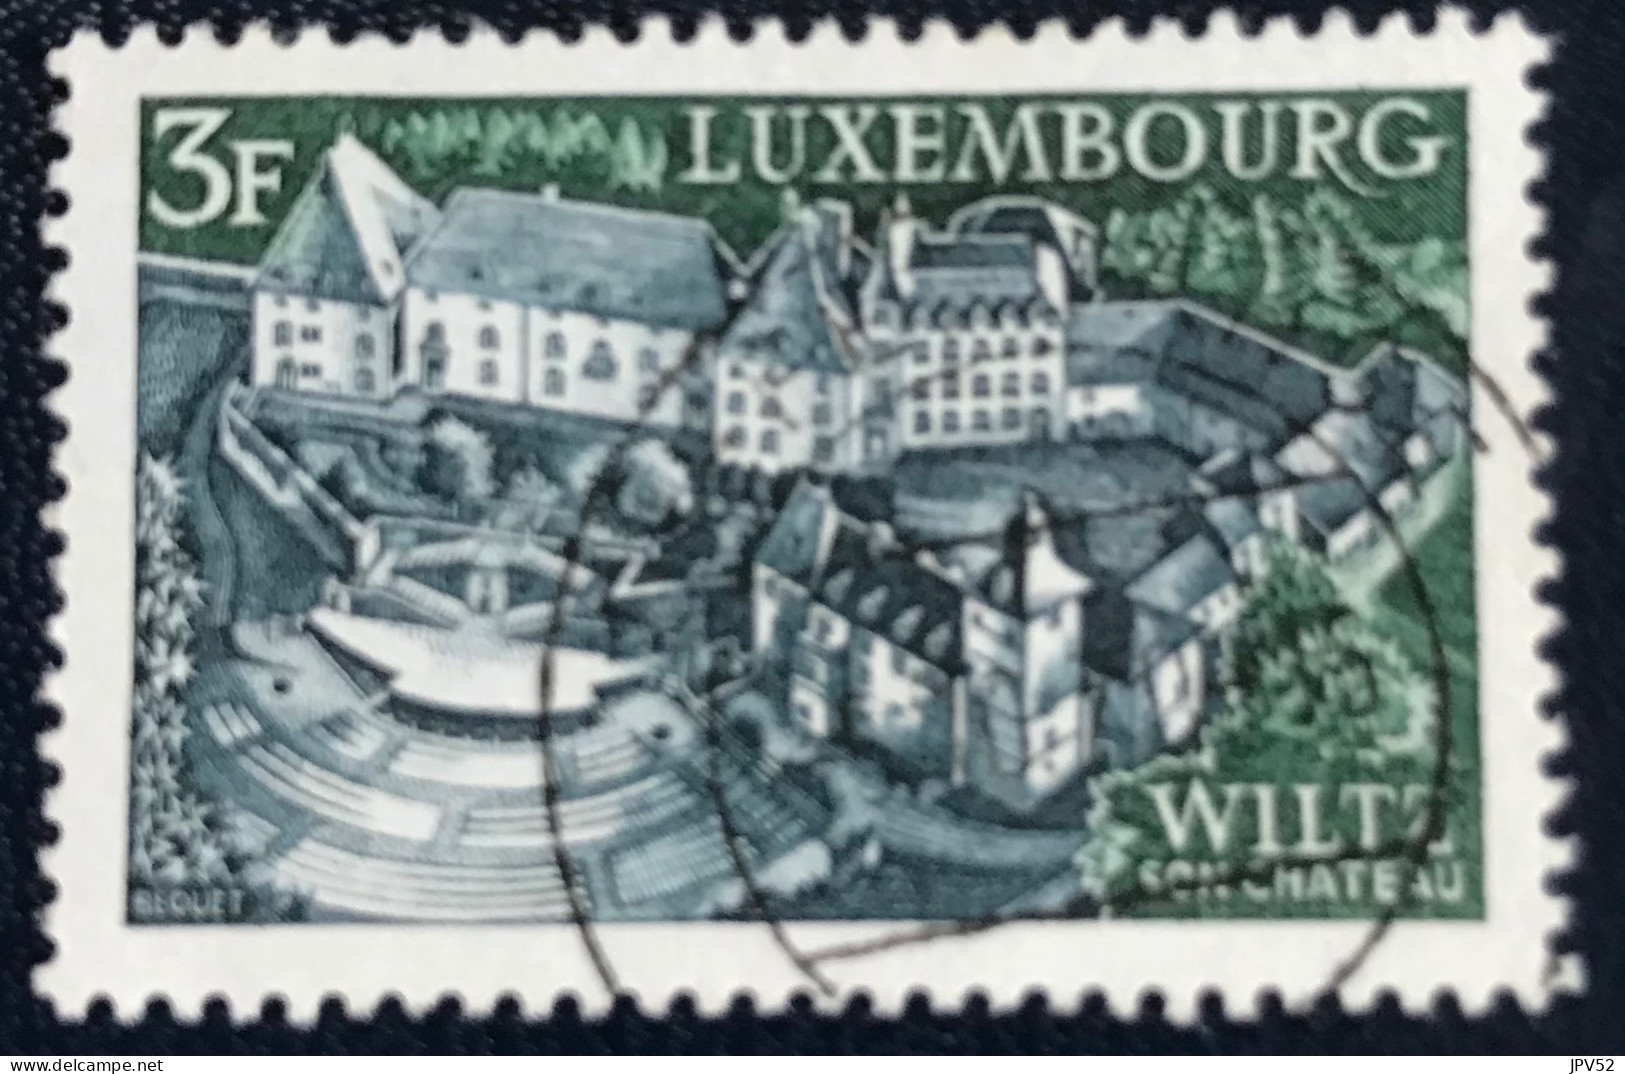 Luxembourg - Luxemburg - C18/33 - 1969 - (°)used - Michel 797 - Wiltz - Gebraucht